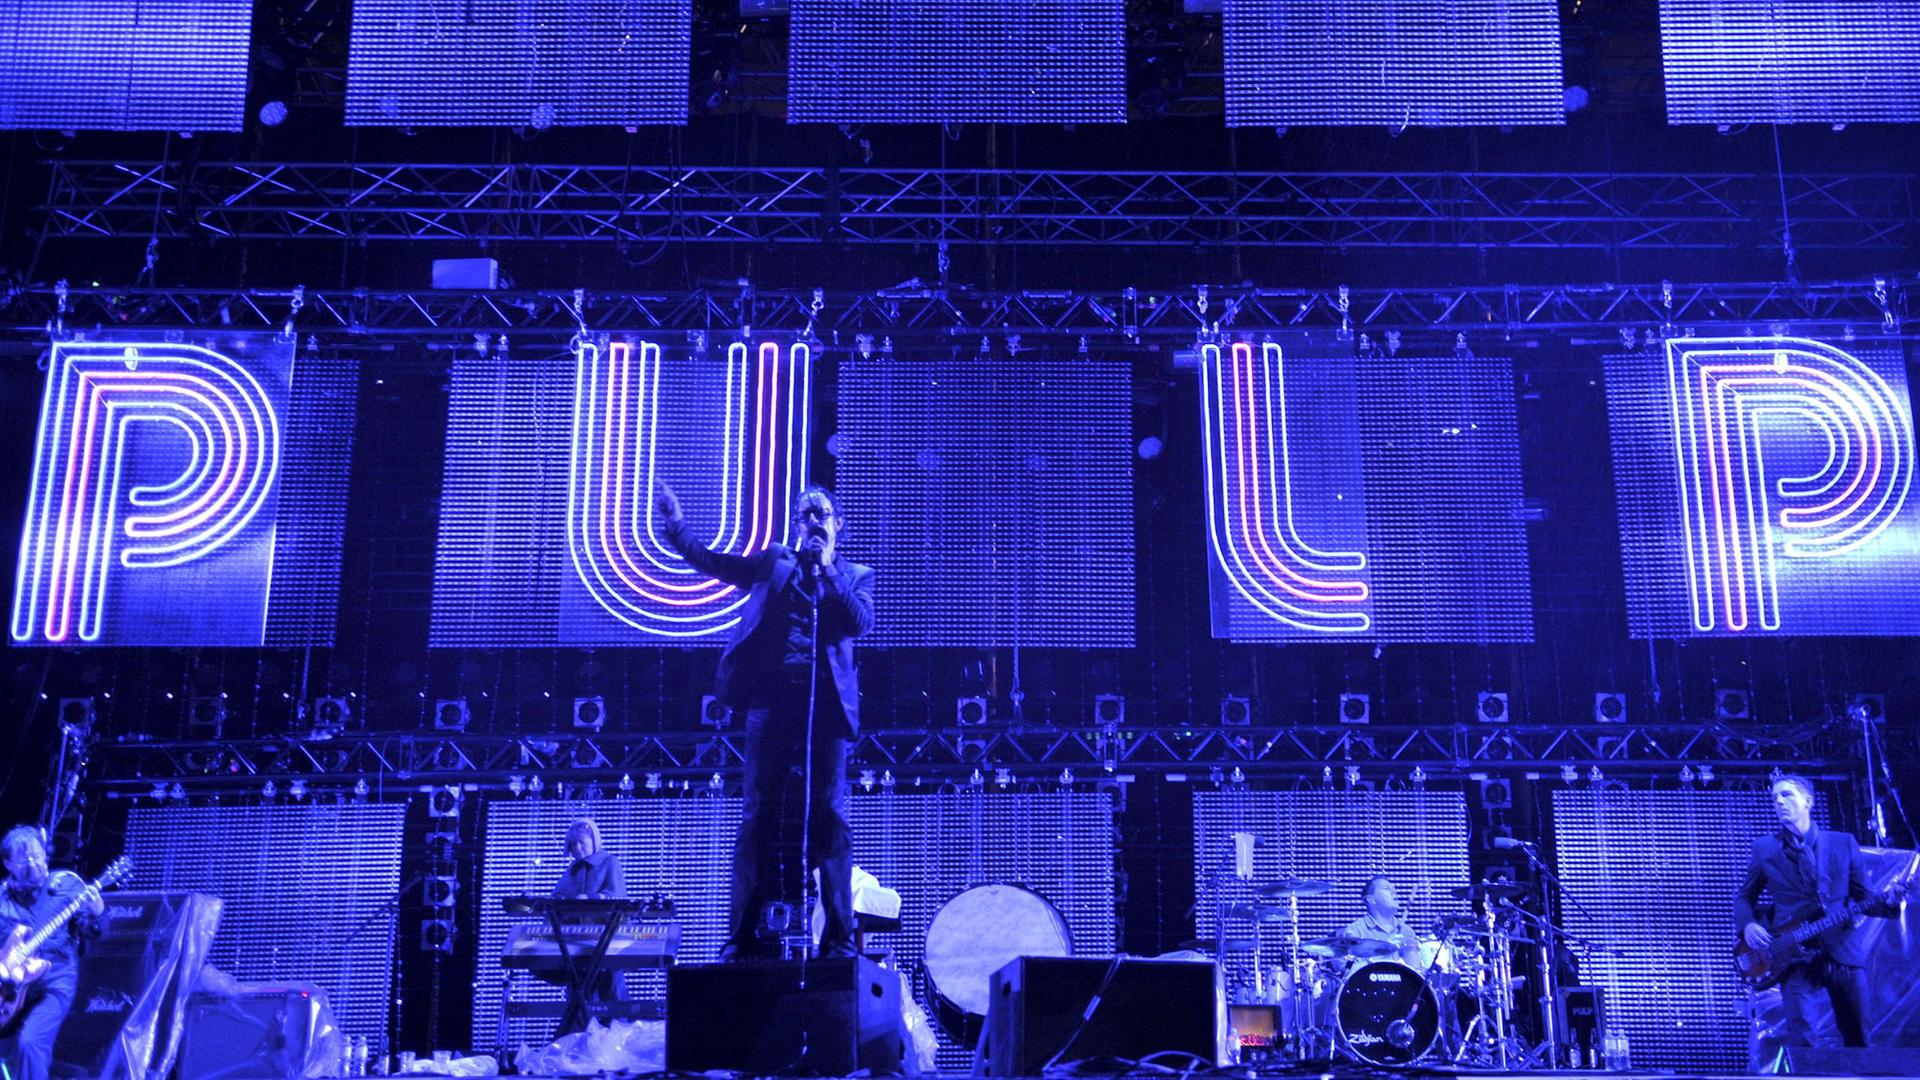 Die Musiker der Band Pulp auf der Bühne vor einer blau angestrahlten Wand. In Leuchtbuchstaben ist "PULP" daran geschrieben. 